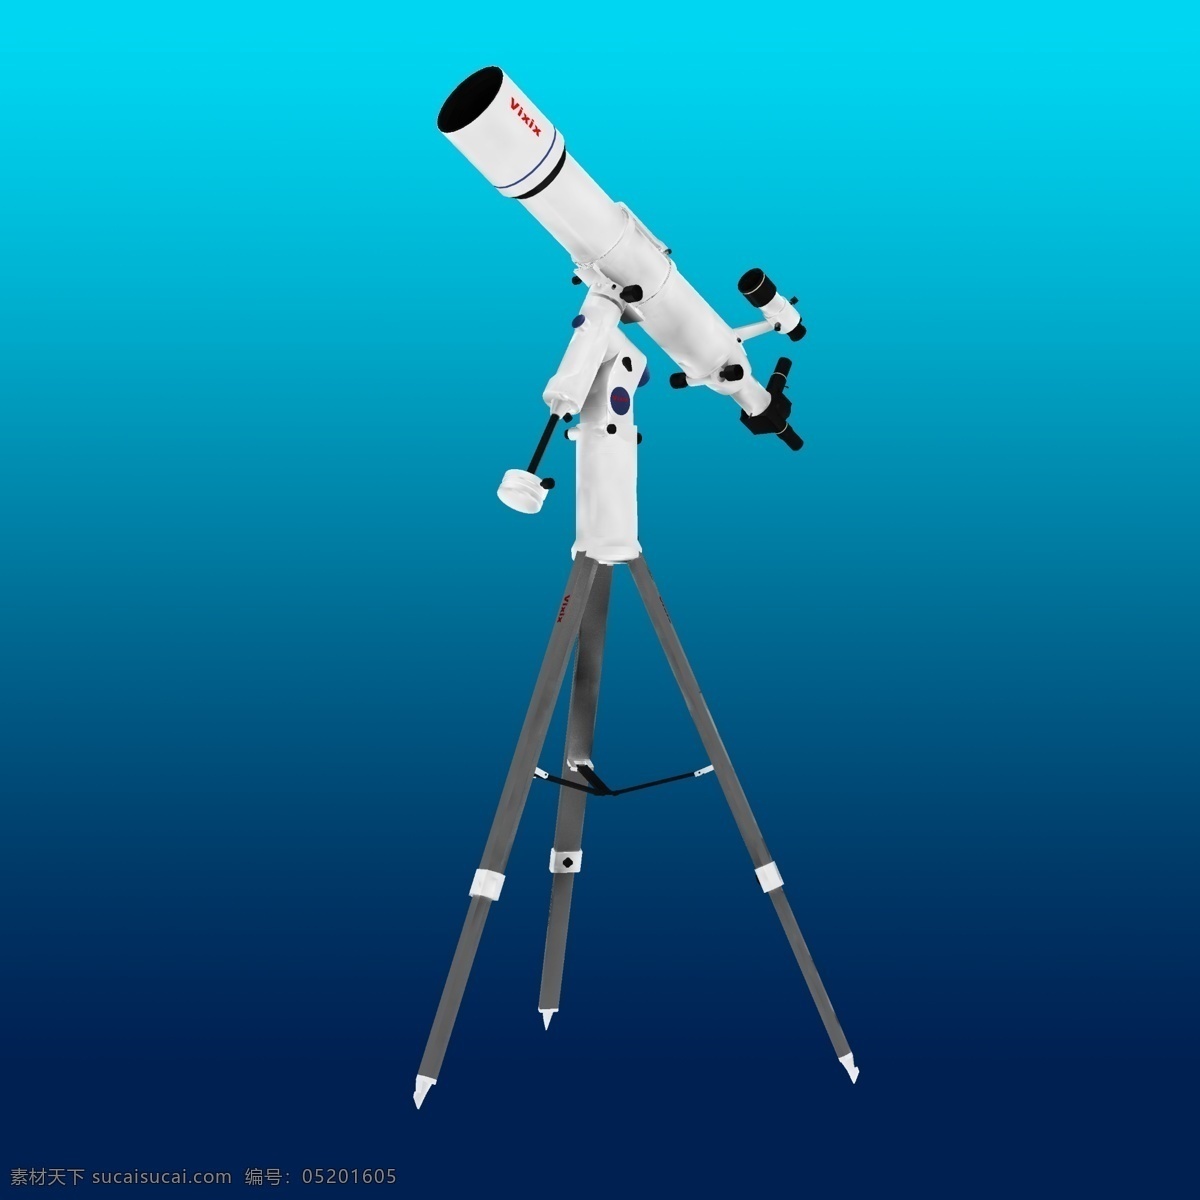 分层 光学仪器 金融 经济 空间 数码 探索 天文望远镜 模板下载 望远镜 天文 源文件 观察 宇宙 奥秘 求知 矢量图 商务金融